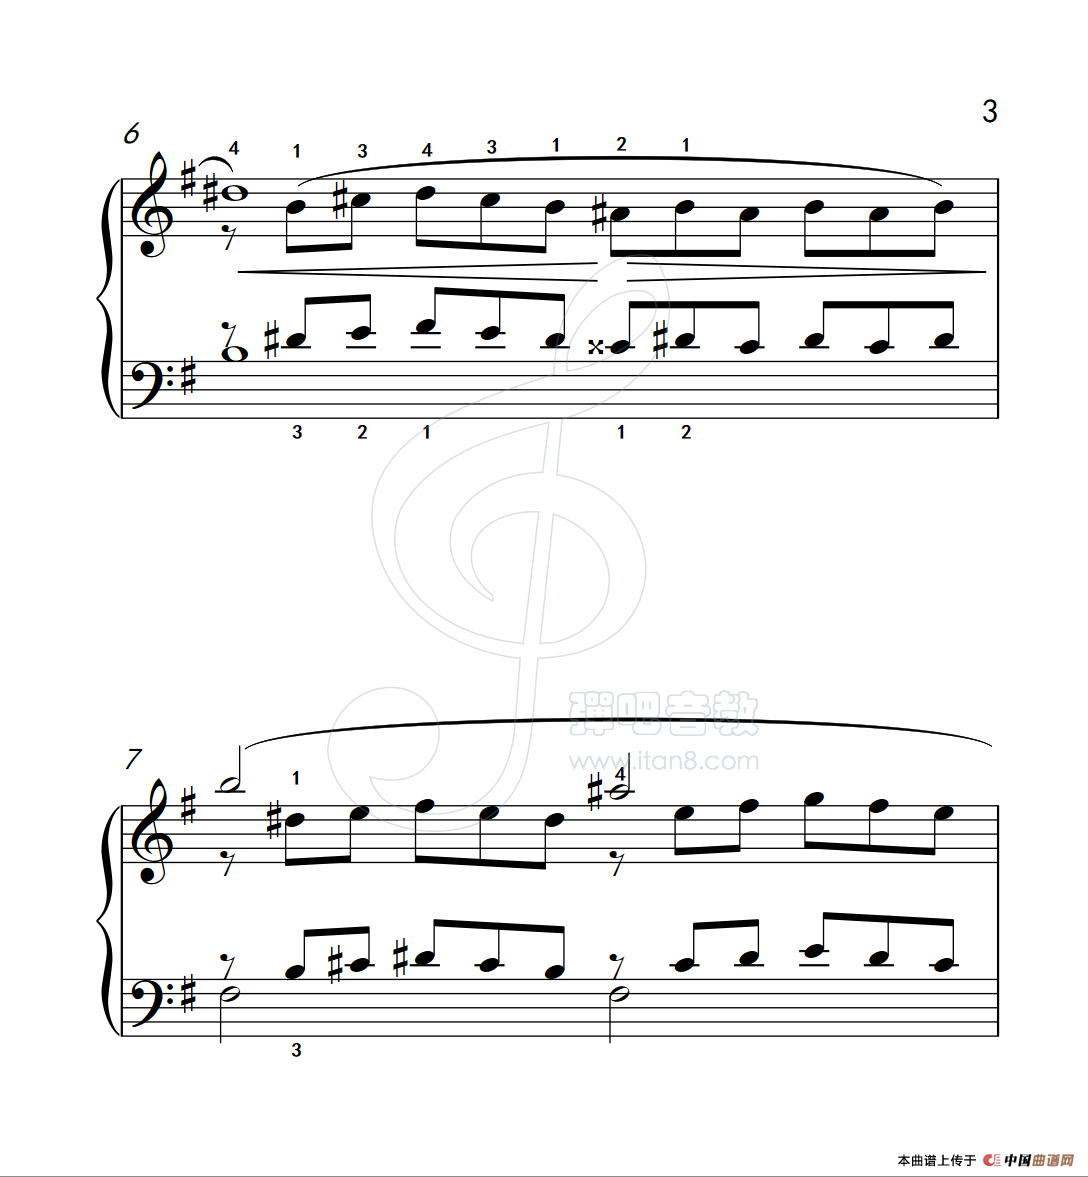 《练习曲 2》钢琴曲谱图分享